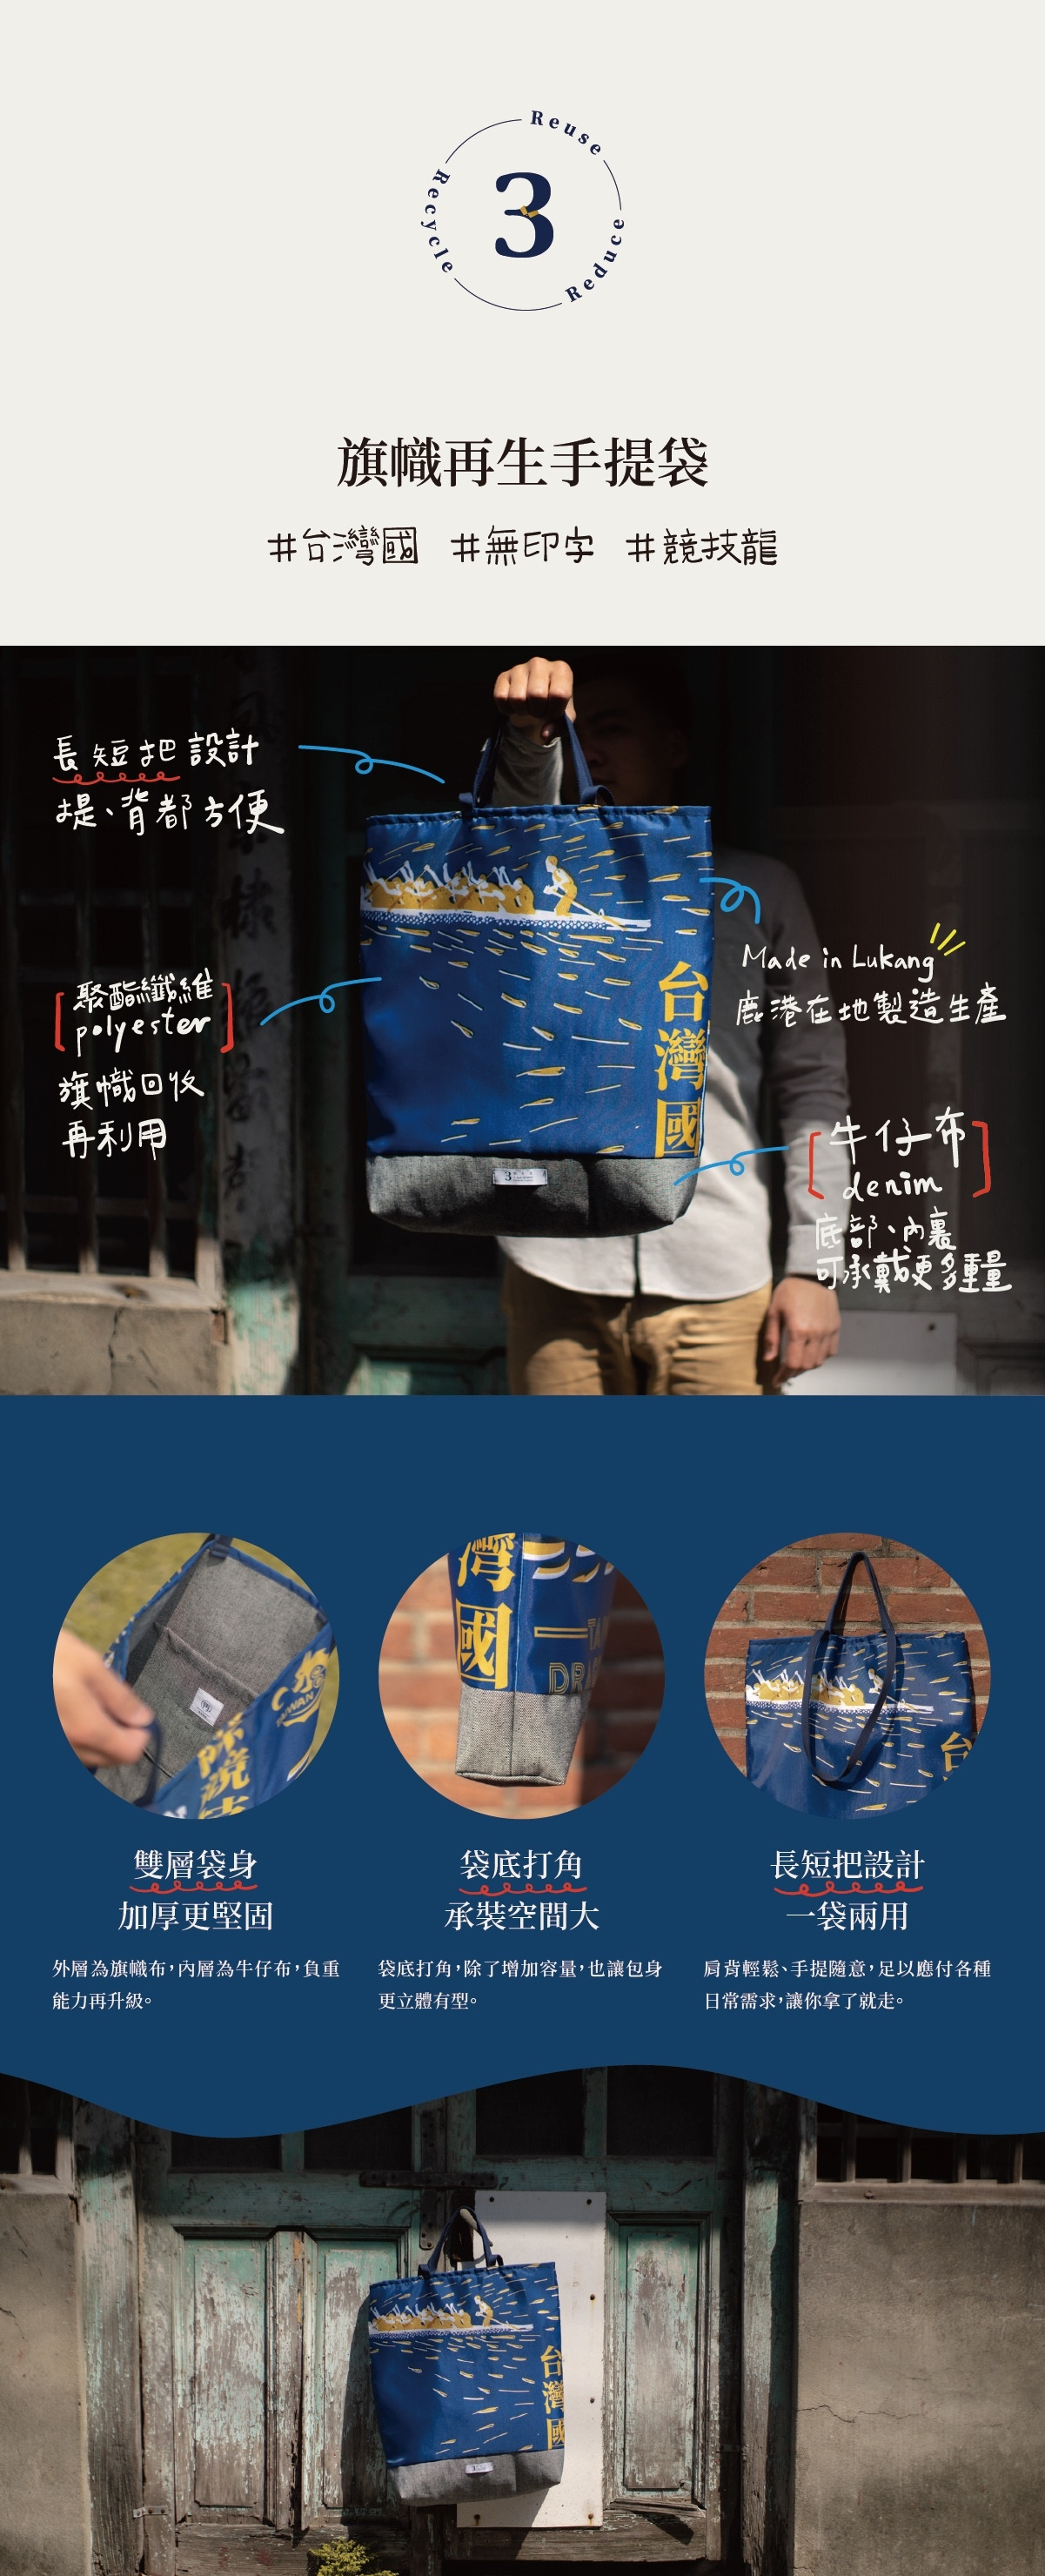 數字3代表參先生工作室，藍色的台灣國旗幟再生手提袋製作是用旗幟回收再利用，有長短把設計一袋兩用，提、背都方便，鹿港在地製造生產，內裏和底部使用牛仔布，雙層袋身加厚更堅固，袋底打角，除了增加容量，也讓包身更立體有型，